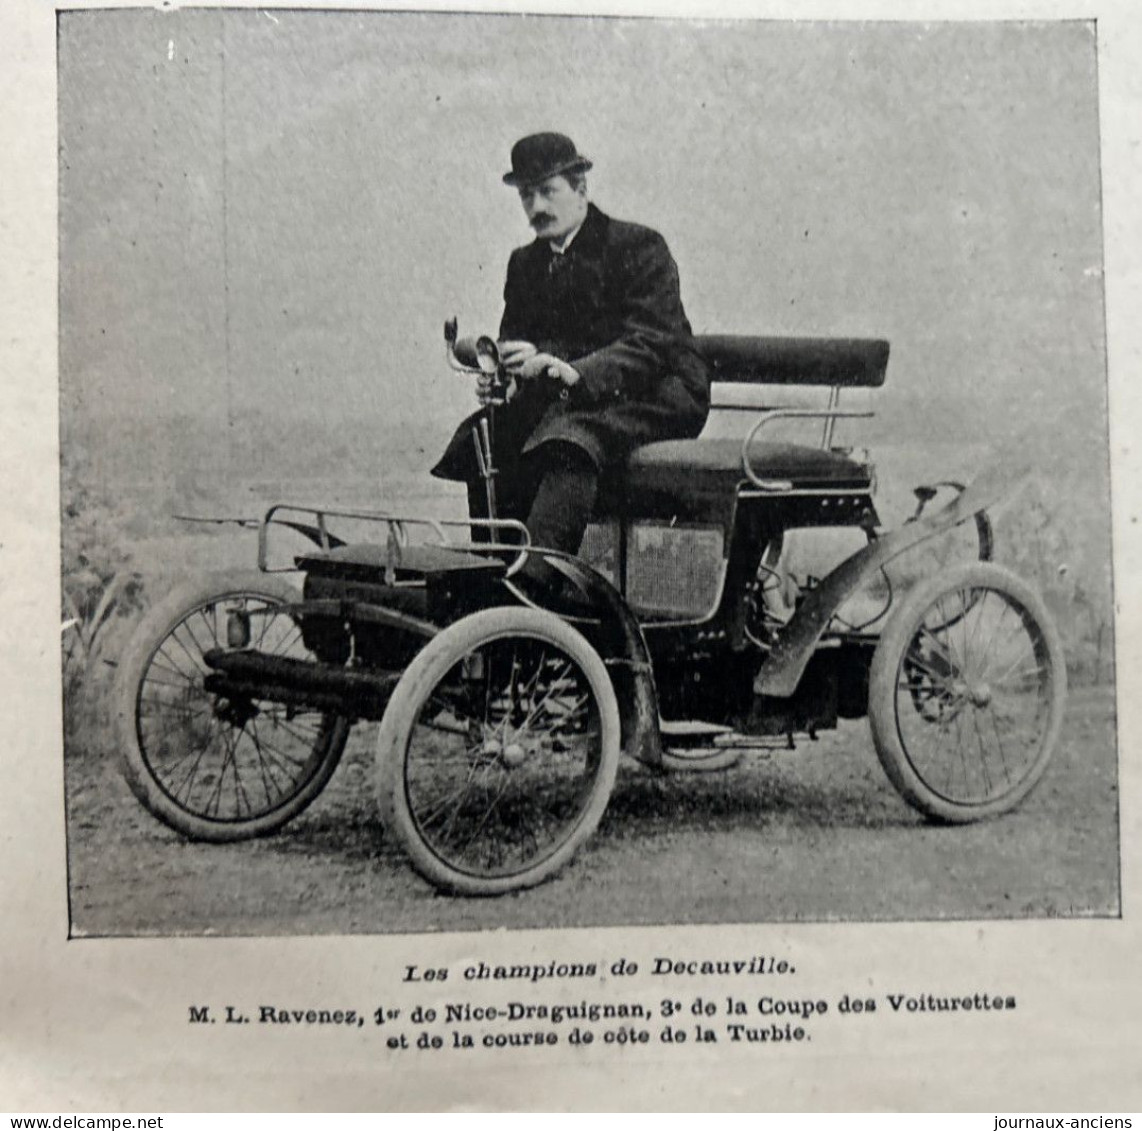 1900 AUTOMOBILE - LES GRANDES USINES AUTOMOBILES - LES ETABLISSEMENTS DECAUVILLE - LA VIE AU GRAND AIR - Automobile - F1